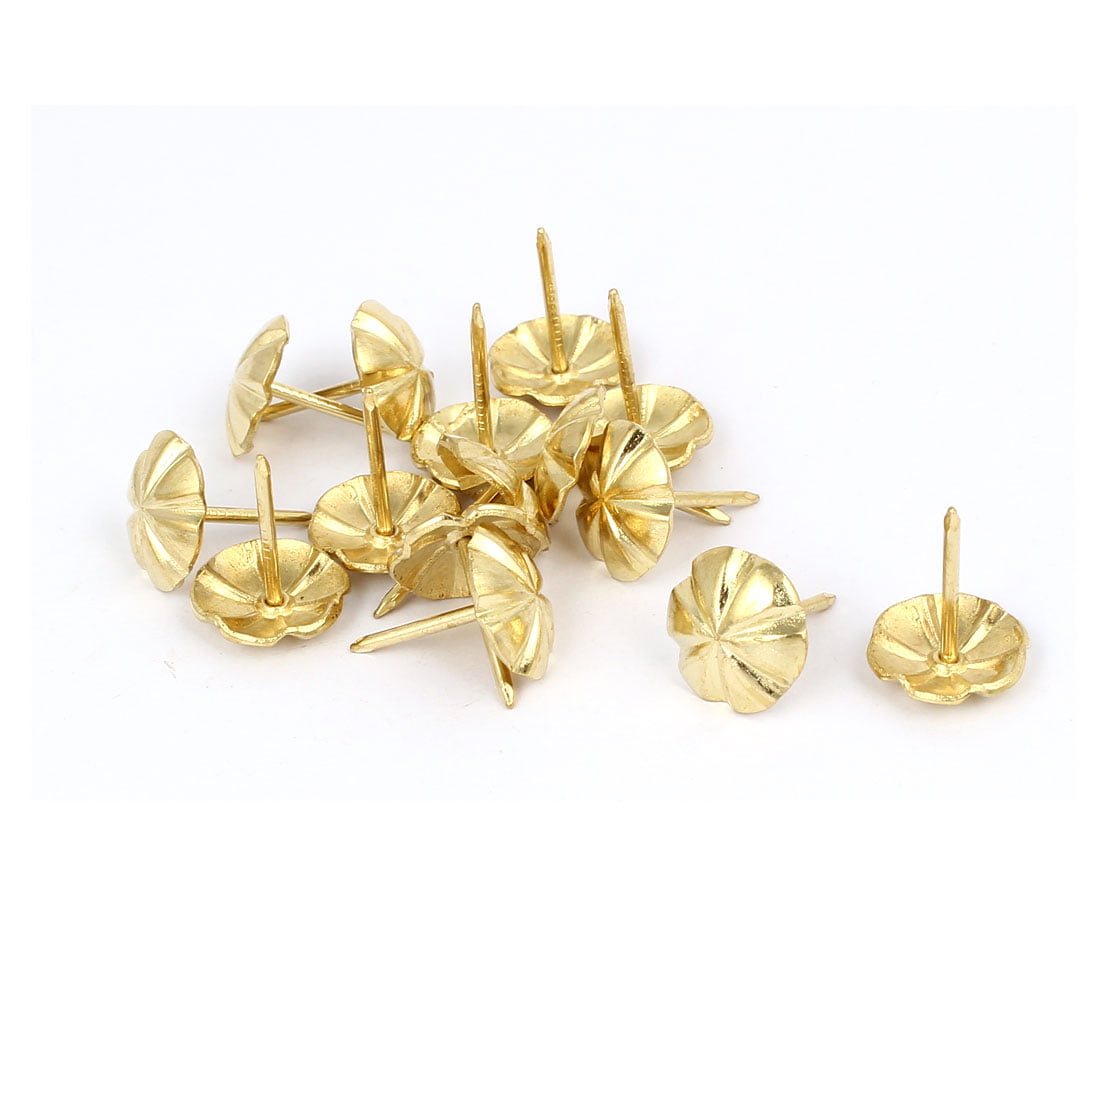 16mm Dia Upholstery Nail Decorative Tack Stud Push Pin Thumbtack Gold ...